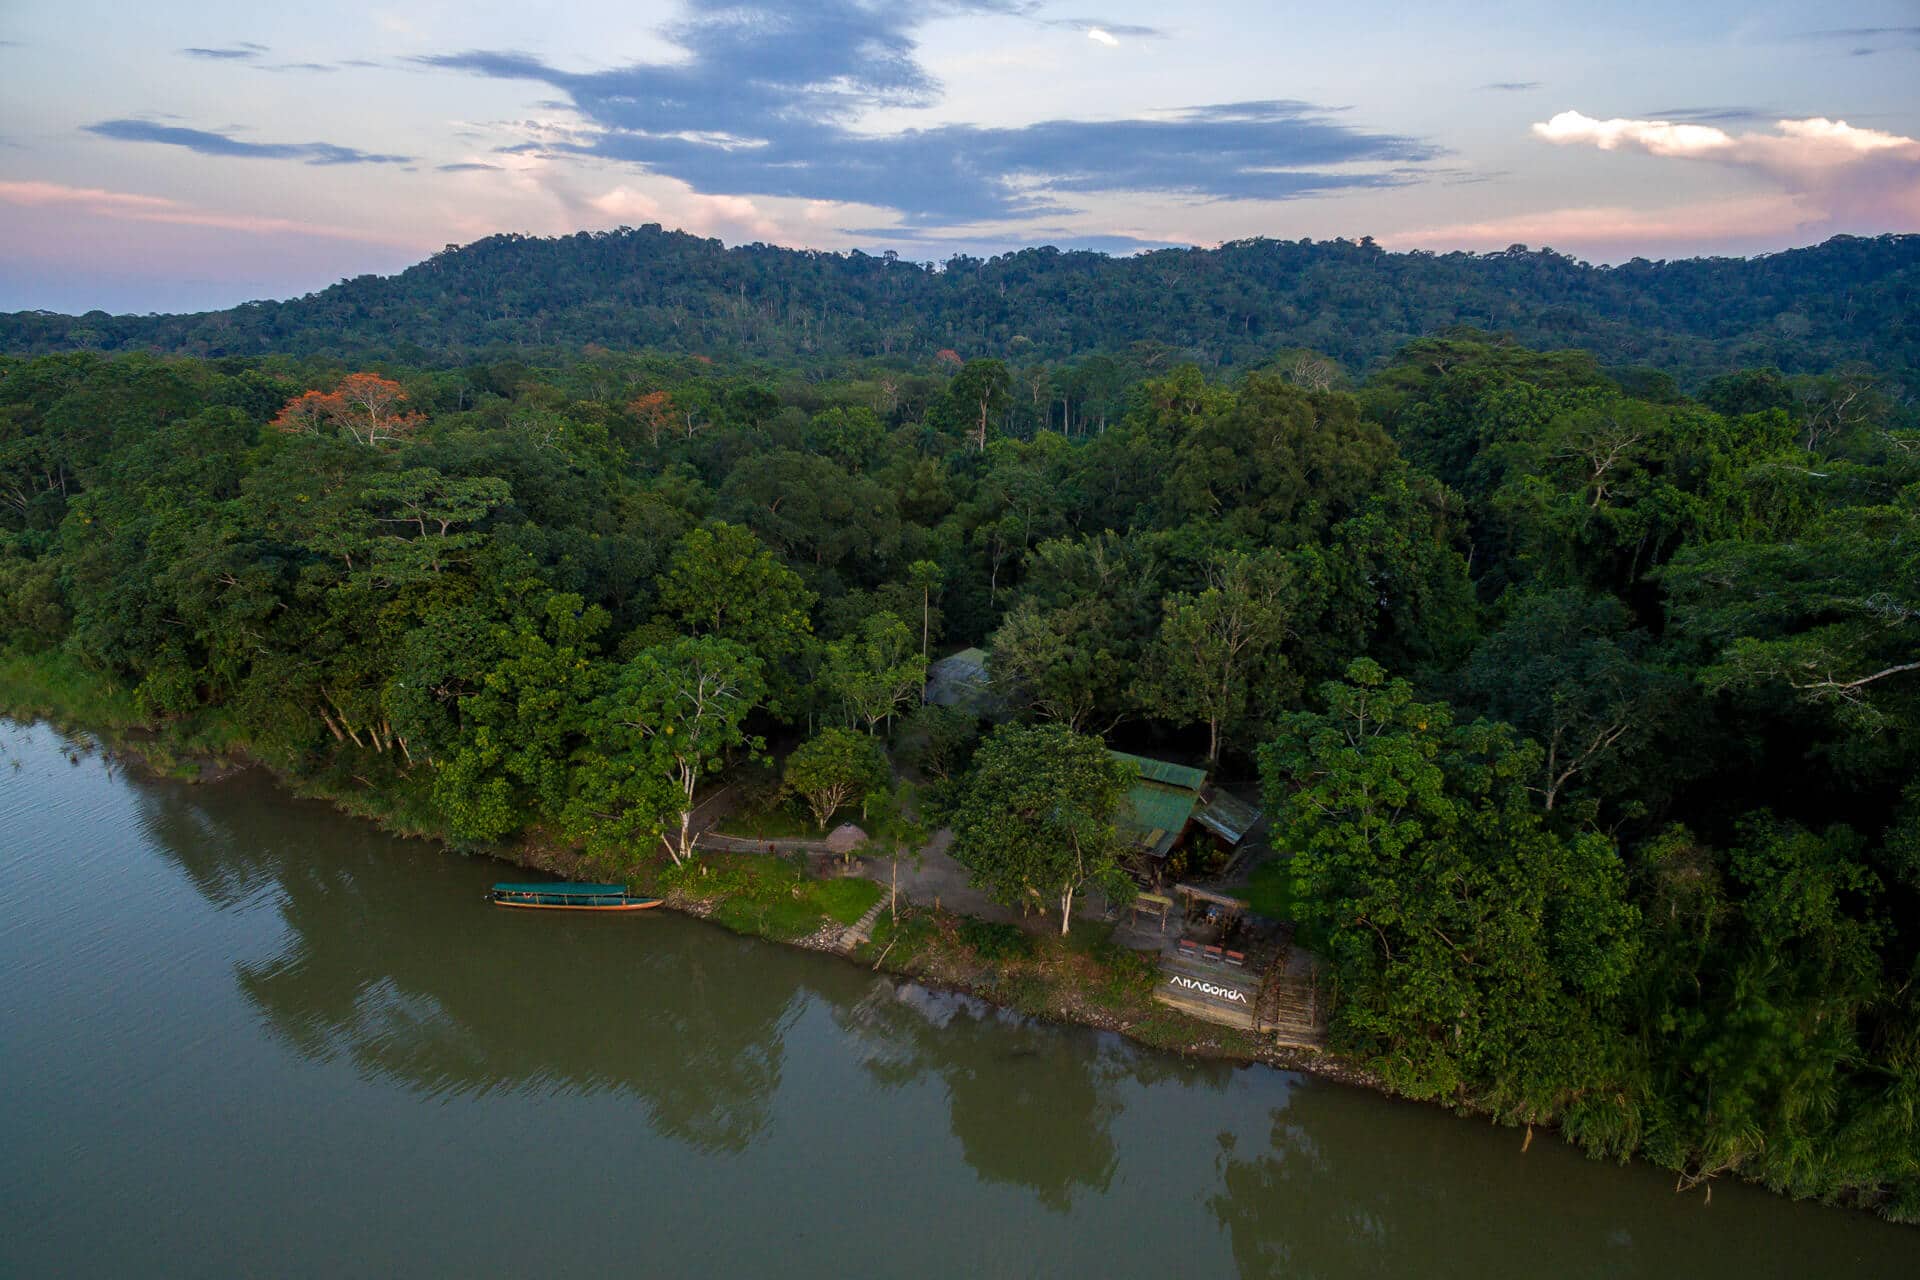 ecuador amazon jungle tour